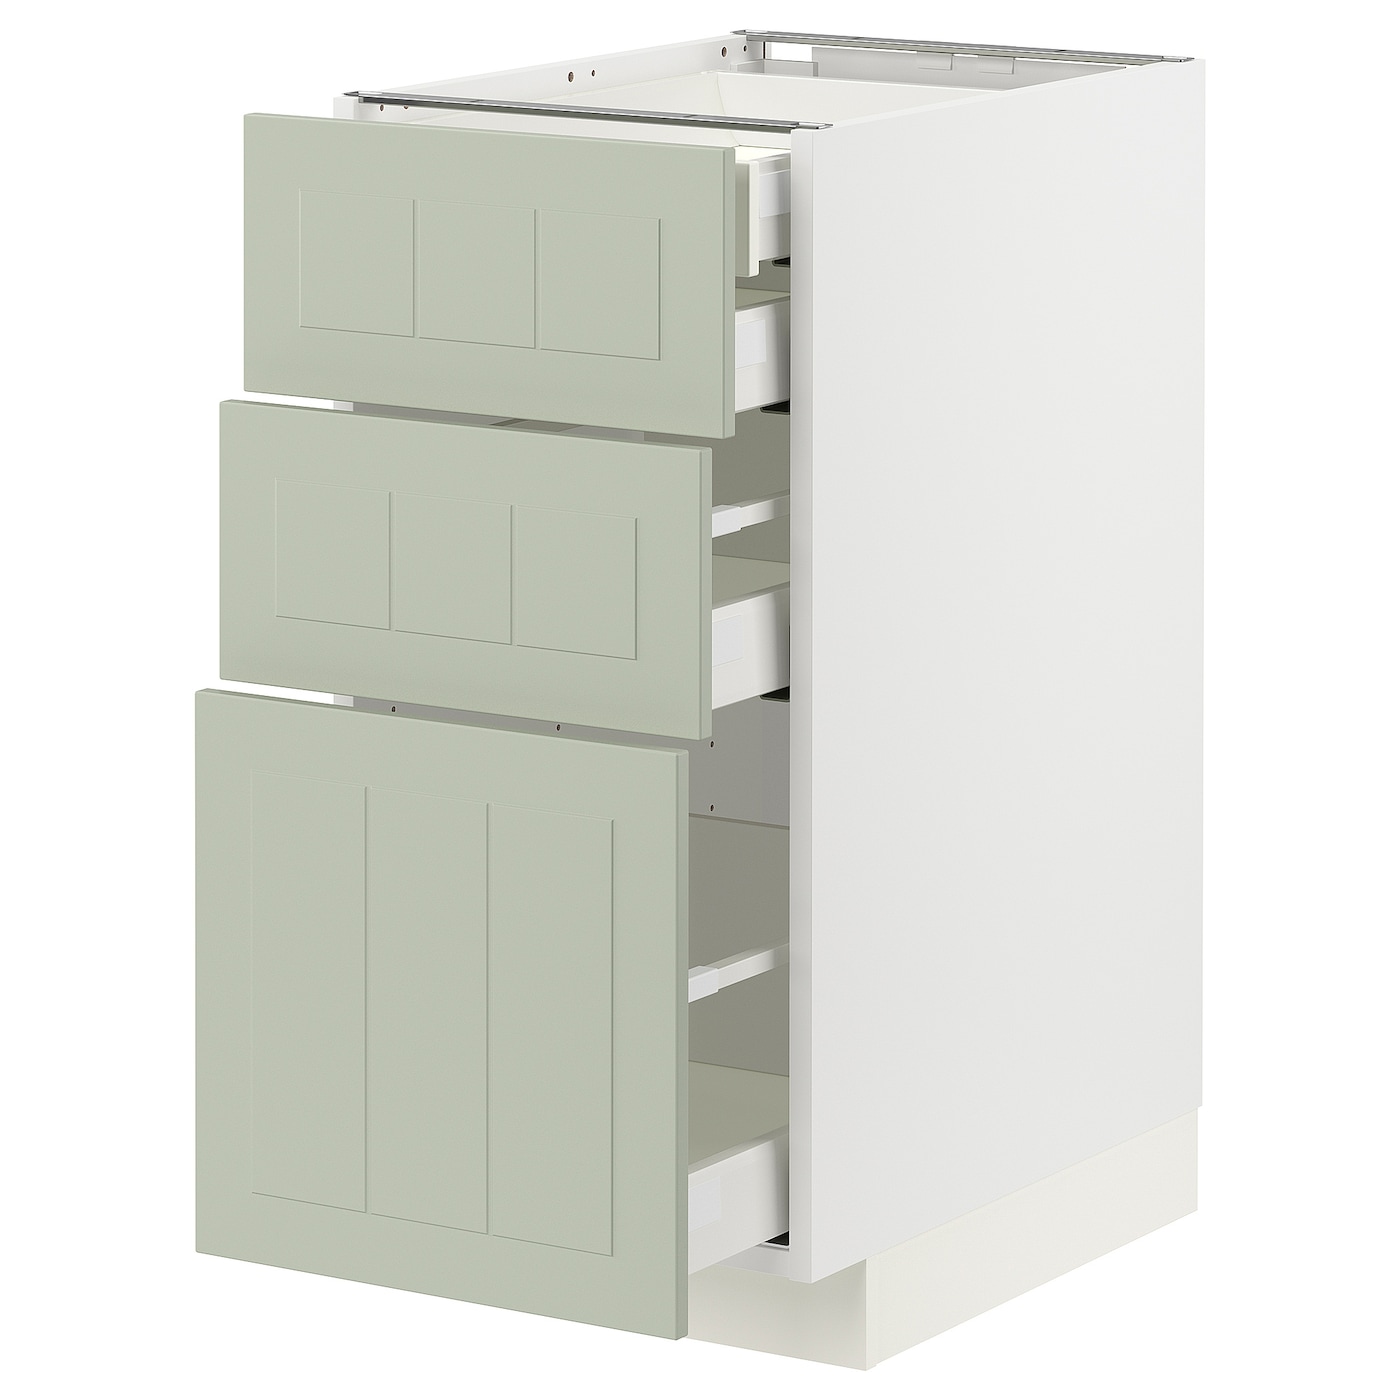 Напольный шкаф  - IKEA METOD MAXIMERA, 88x61,9x40см, белый/светло-зелёный, МЕТОД МАКСИМЕРА ИКЕА